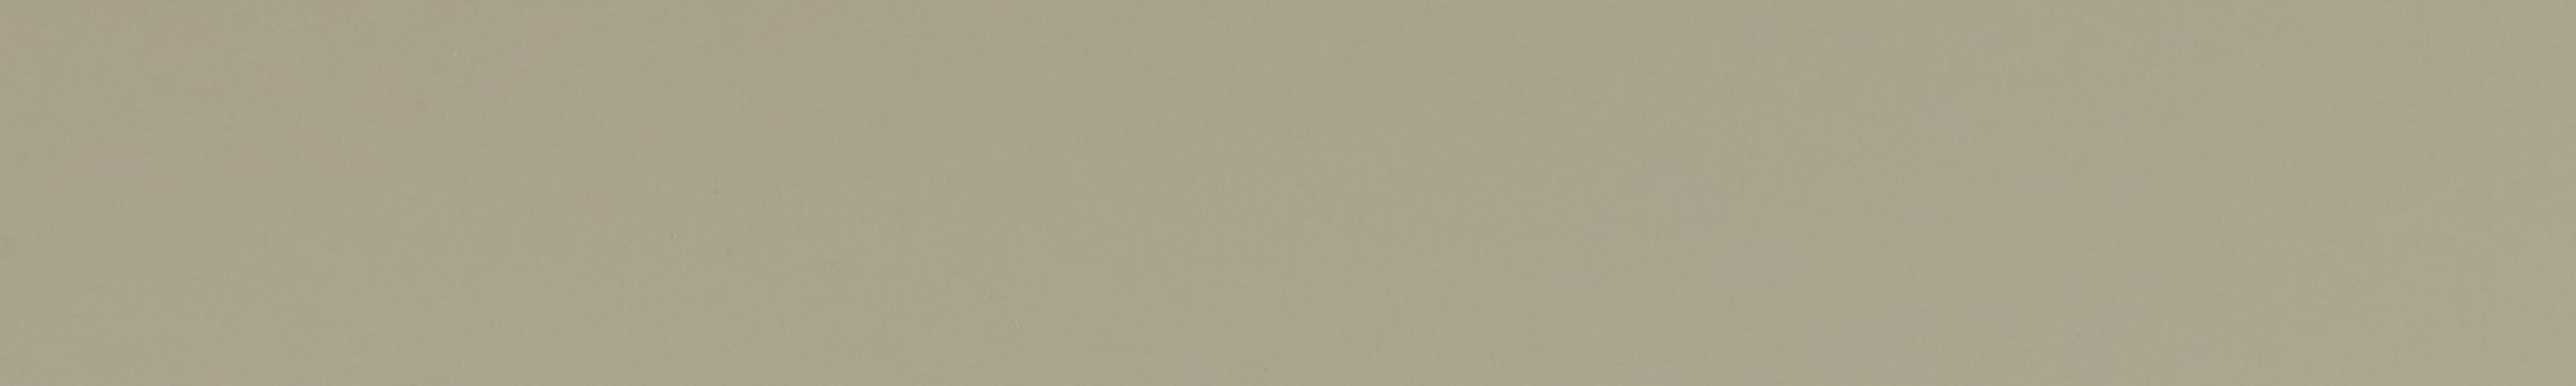 skai® smartline colore classico muschel         0,20 1420